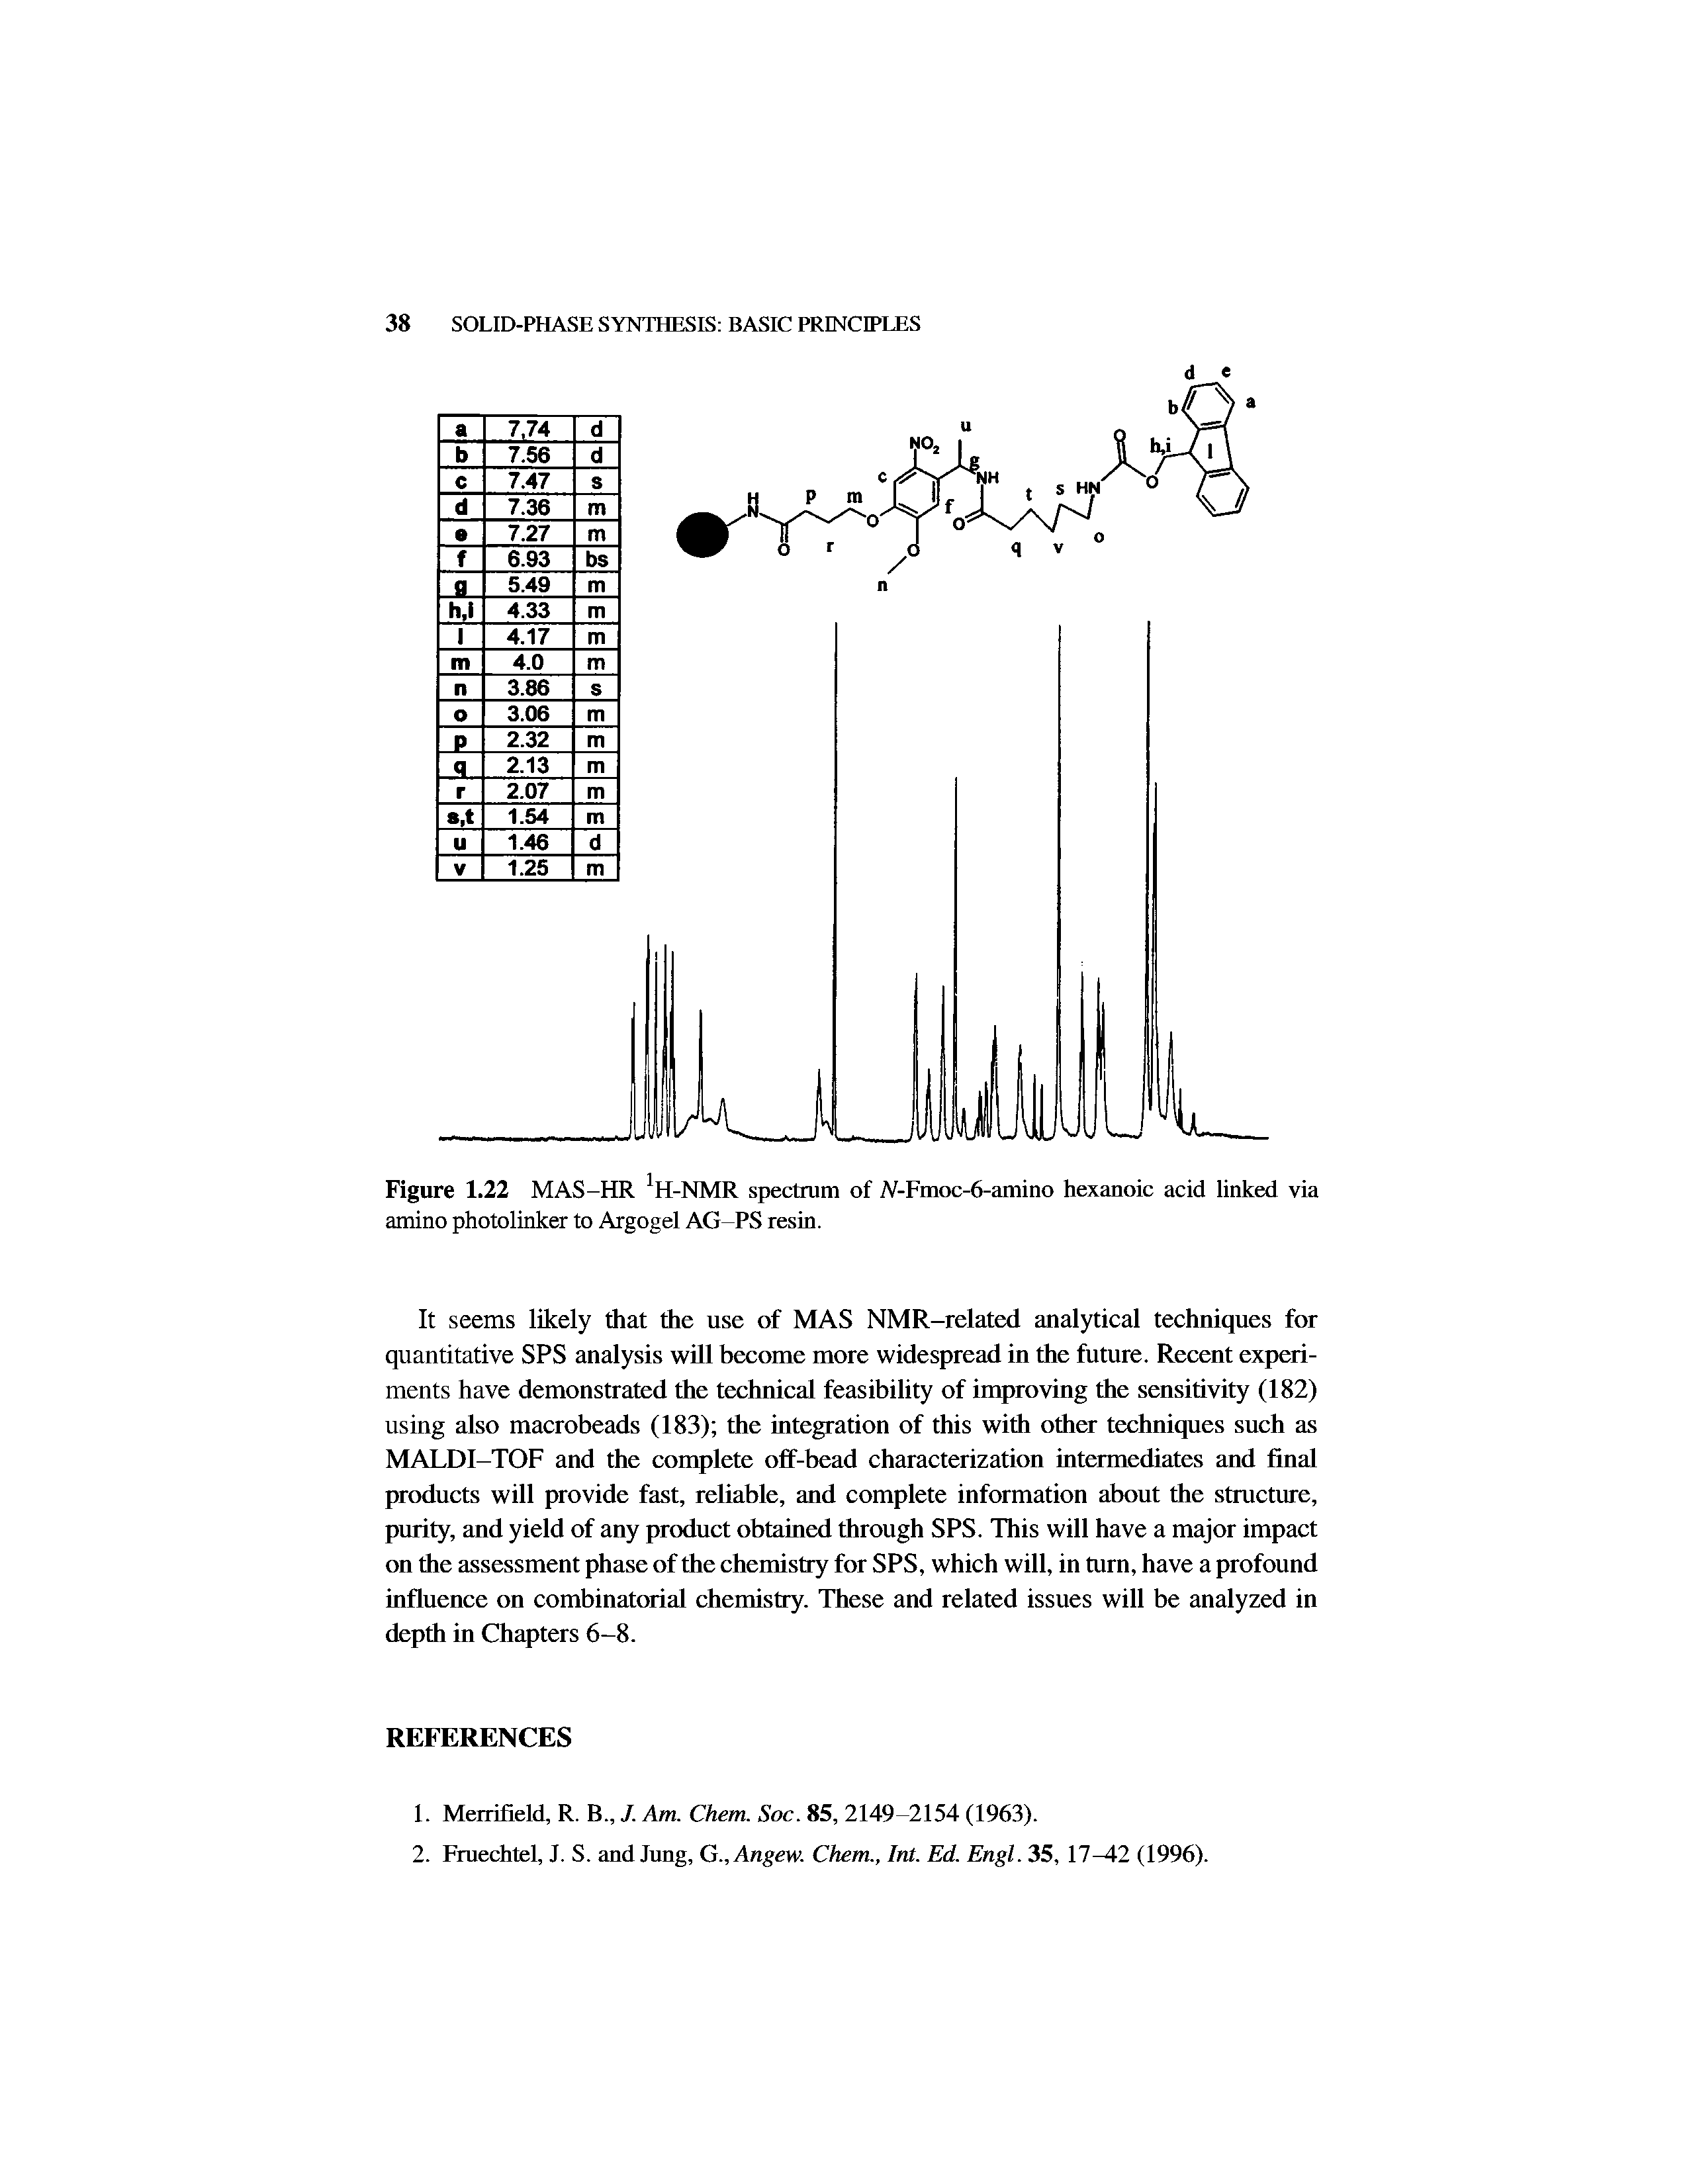 Figure 1.22 MAS-HR H-NMR spectrum of A-Fmoc-6-amino hexanoic acid linked via amino photolinker to Argogel AG-PS resin.